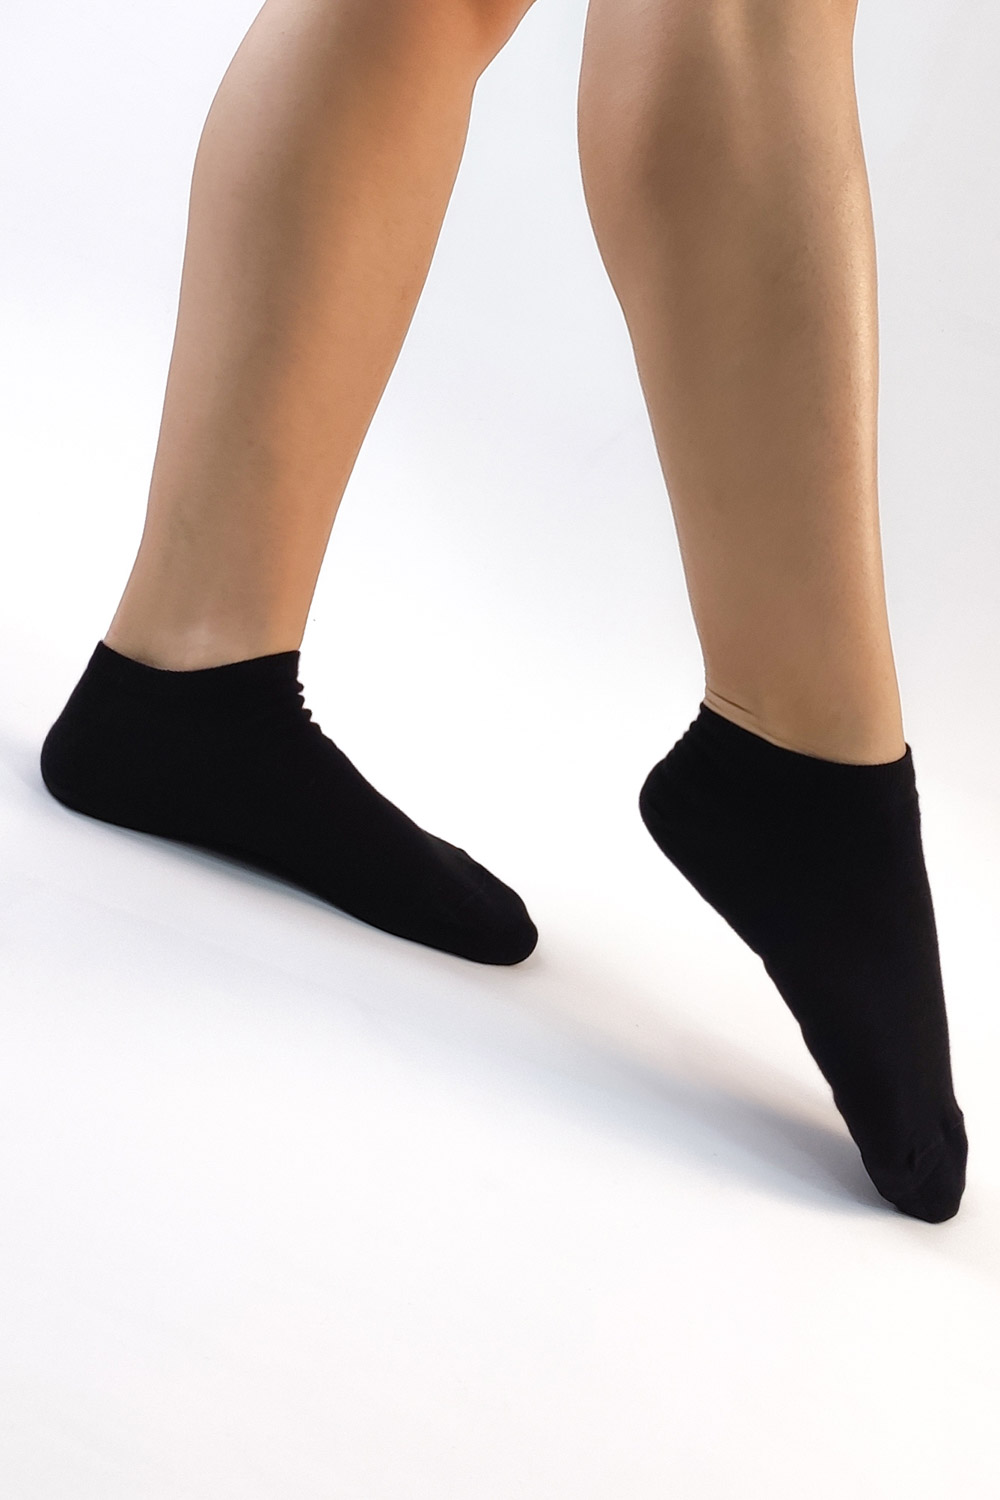 γυναικείες μαυρες κοντές κάλτσες